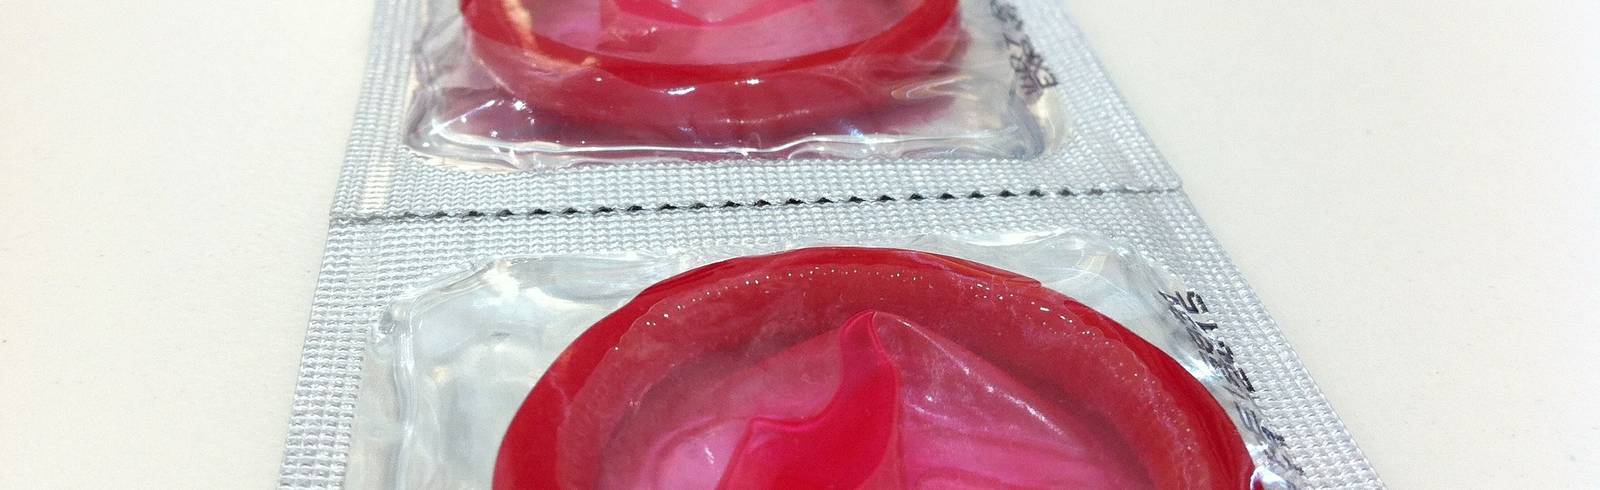 Durex ruft Kondome zurück